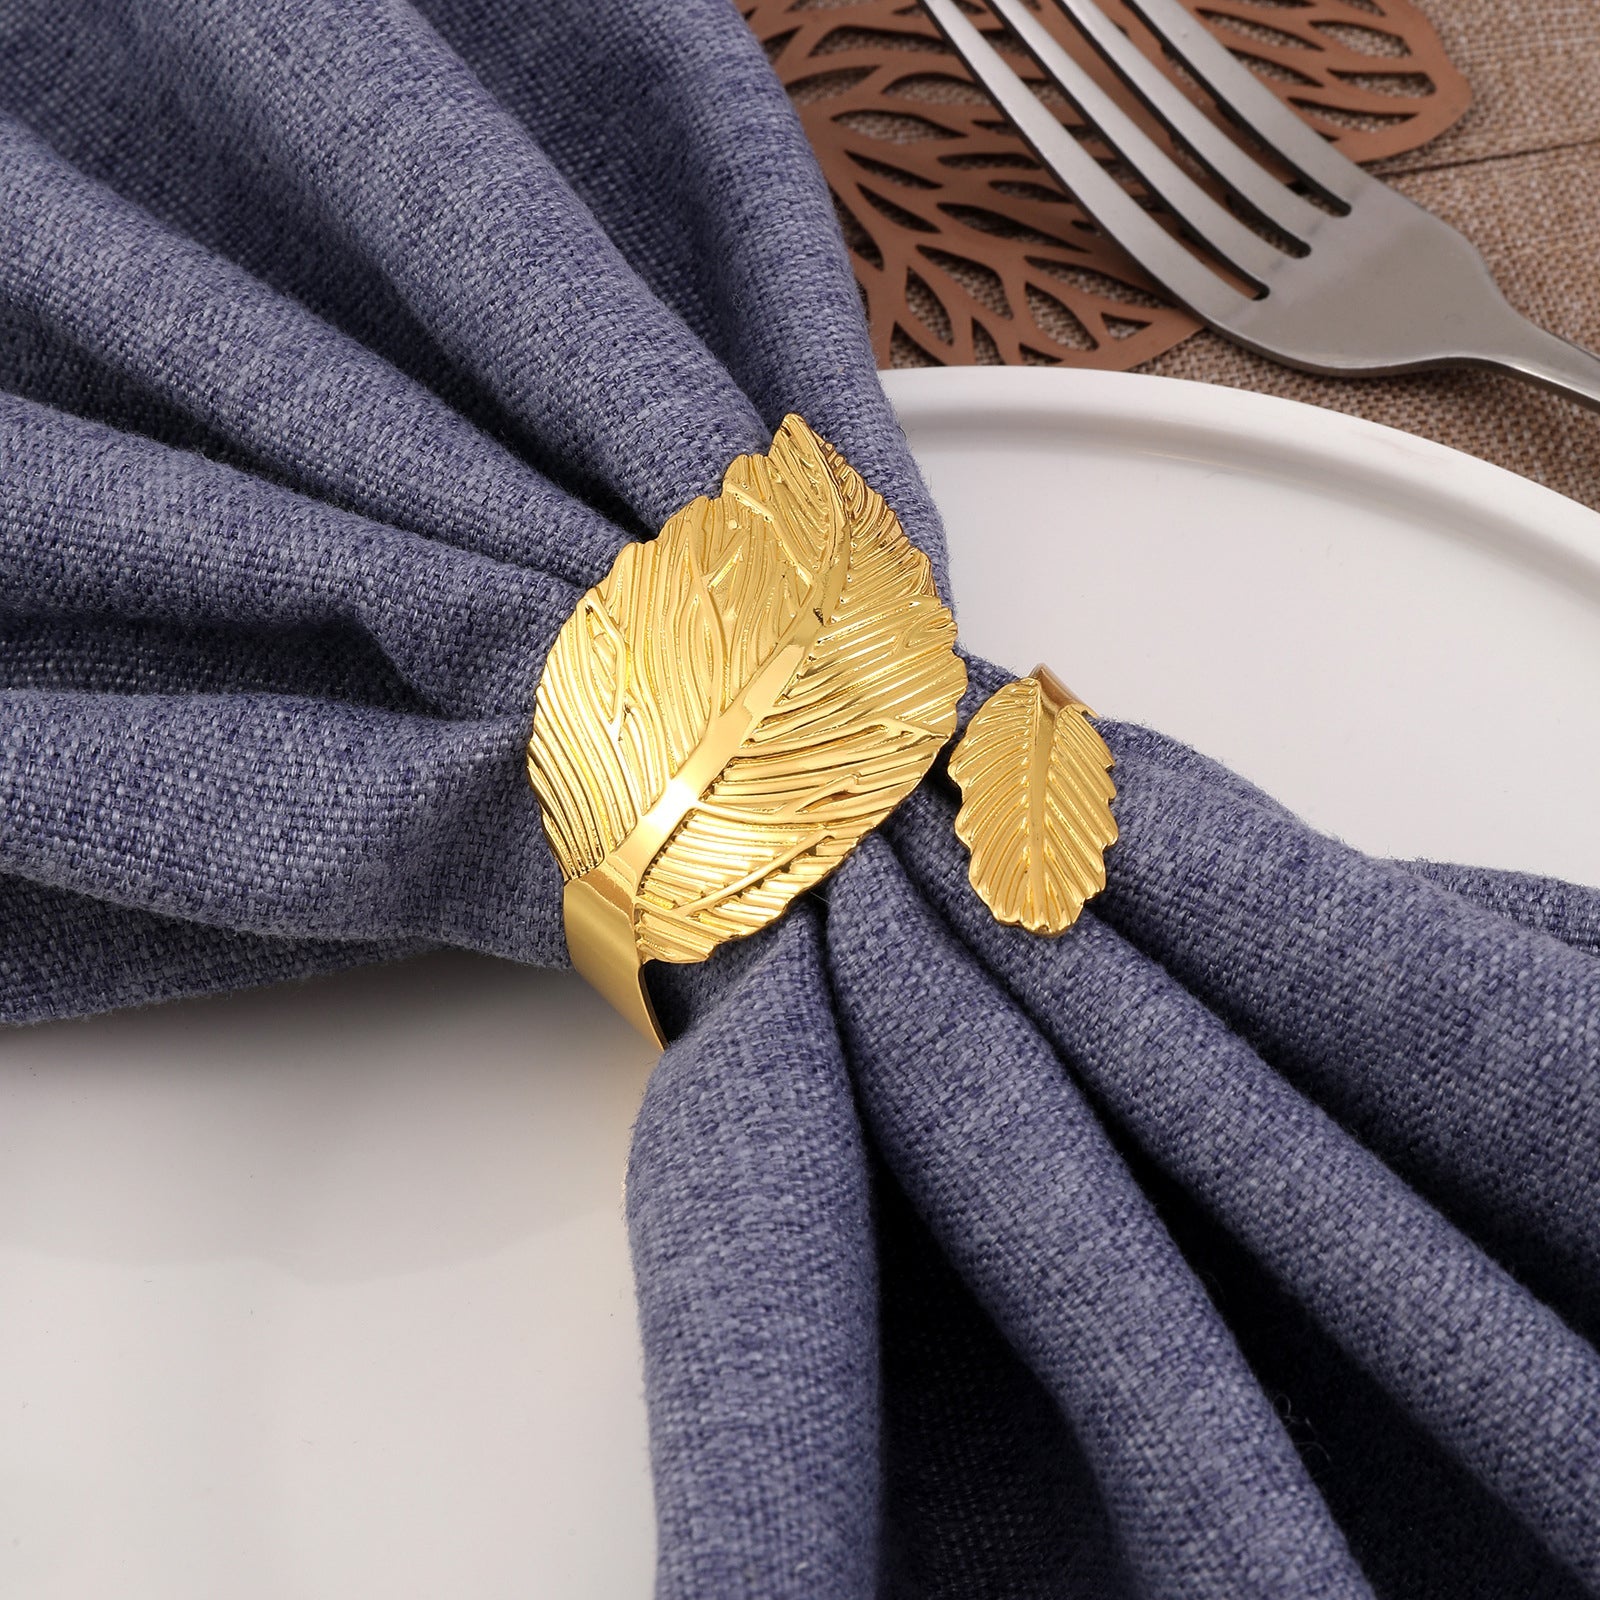 Anneaux de serviette en forme de feuille, 12 pièces, porte-serviettes, ornements en alliage doré